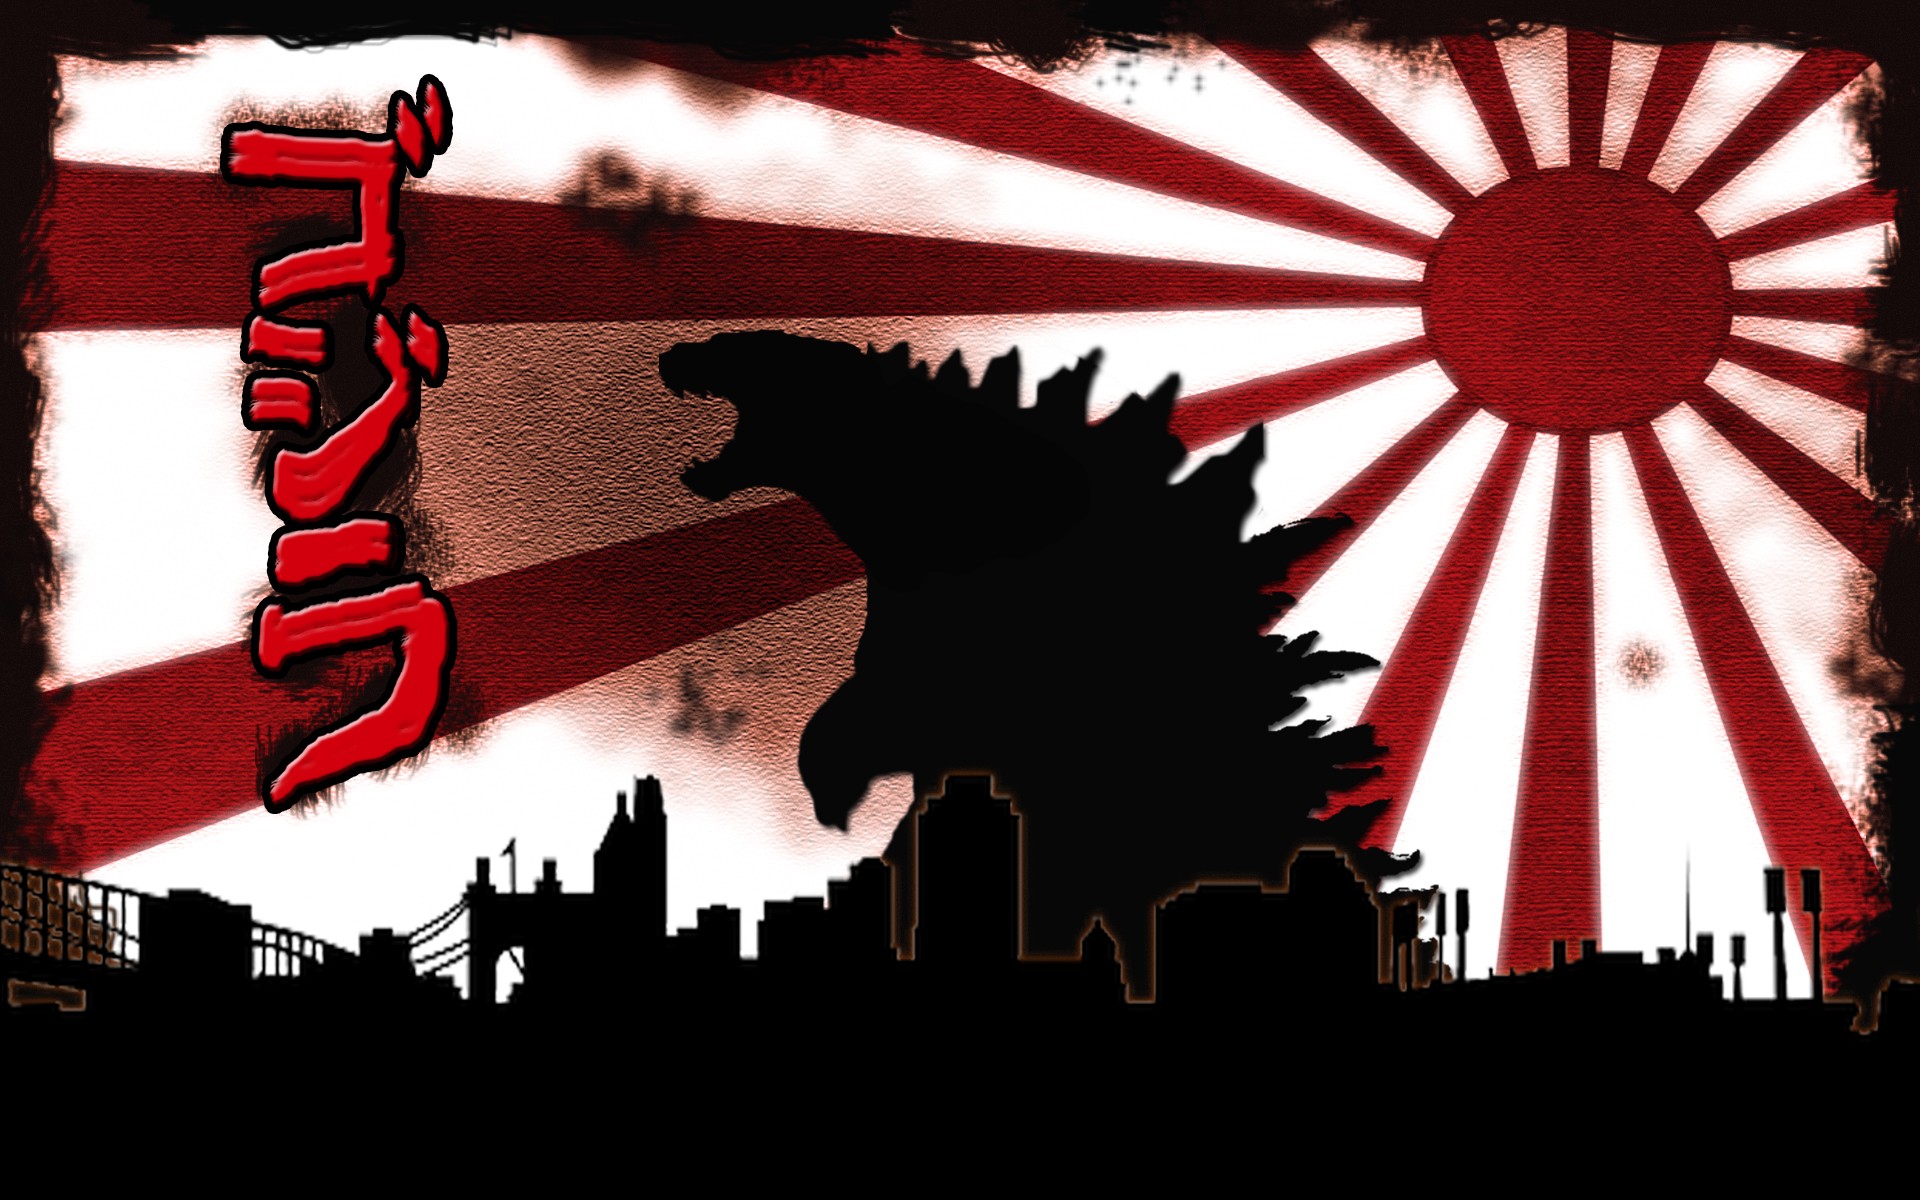 General 1920x1200 creature cityscape silhouette red white black Godzilla digital art